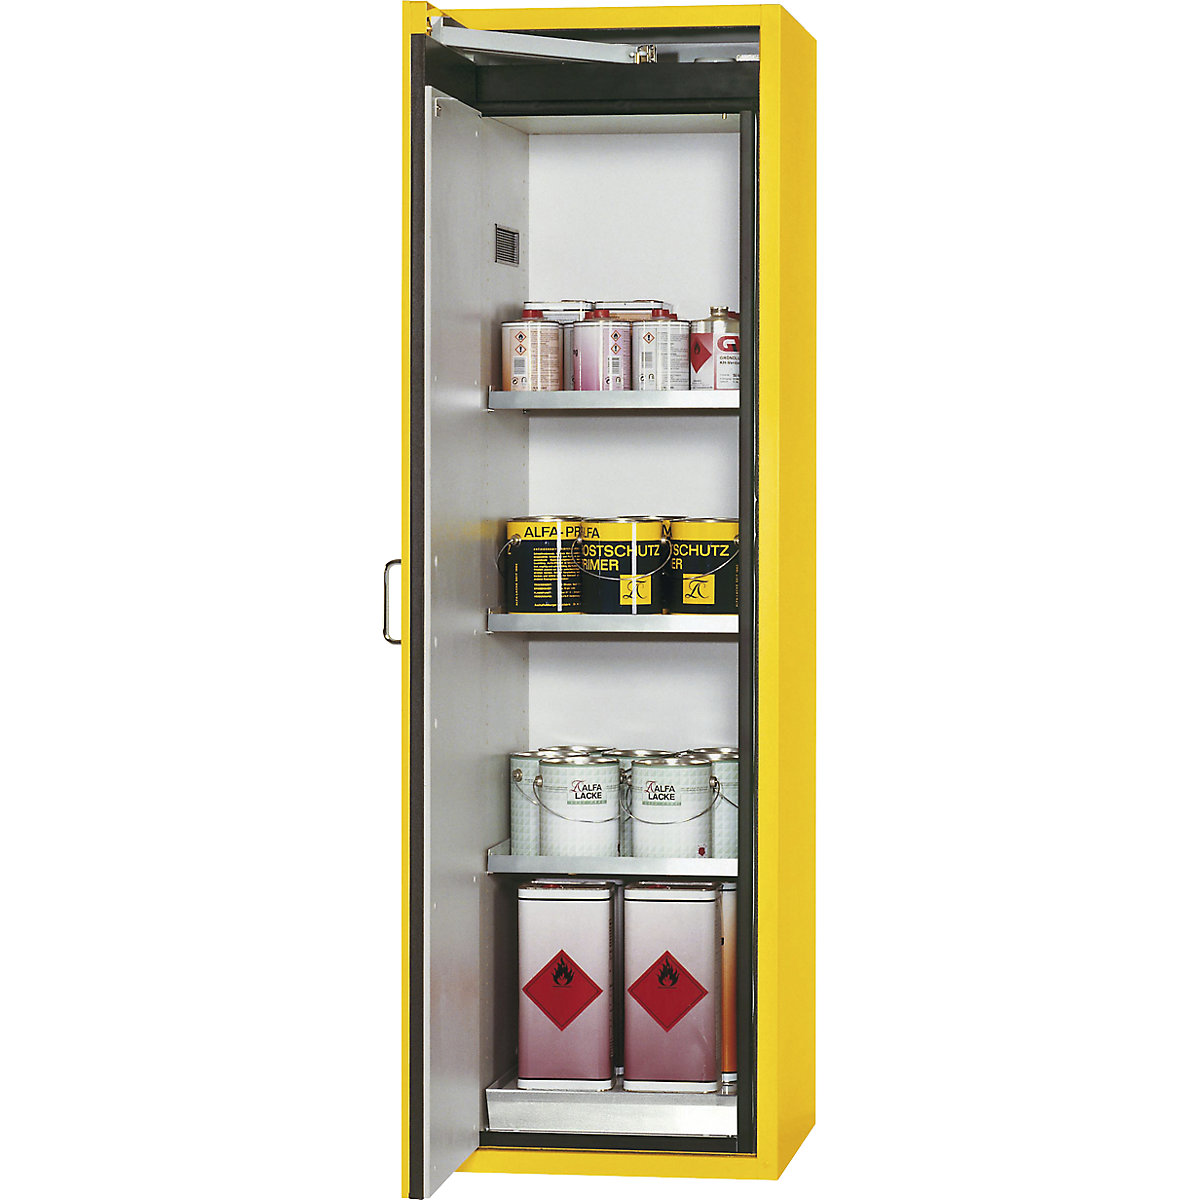 asecos – Armoire pour produits dangereux ignifuges 90 minutes, 1 porte, dim. ext. h x l x p 1968 x 600 x 615 mm, coloris jaune, inox